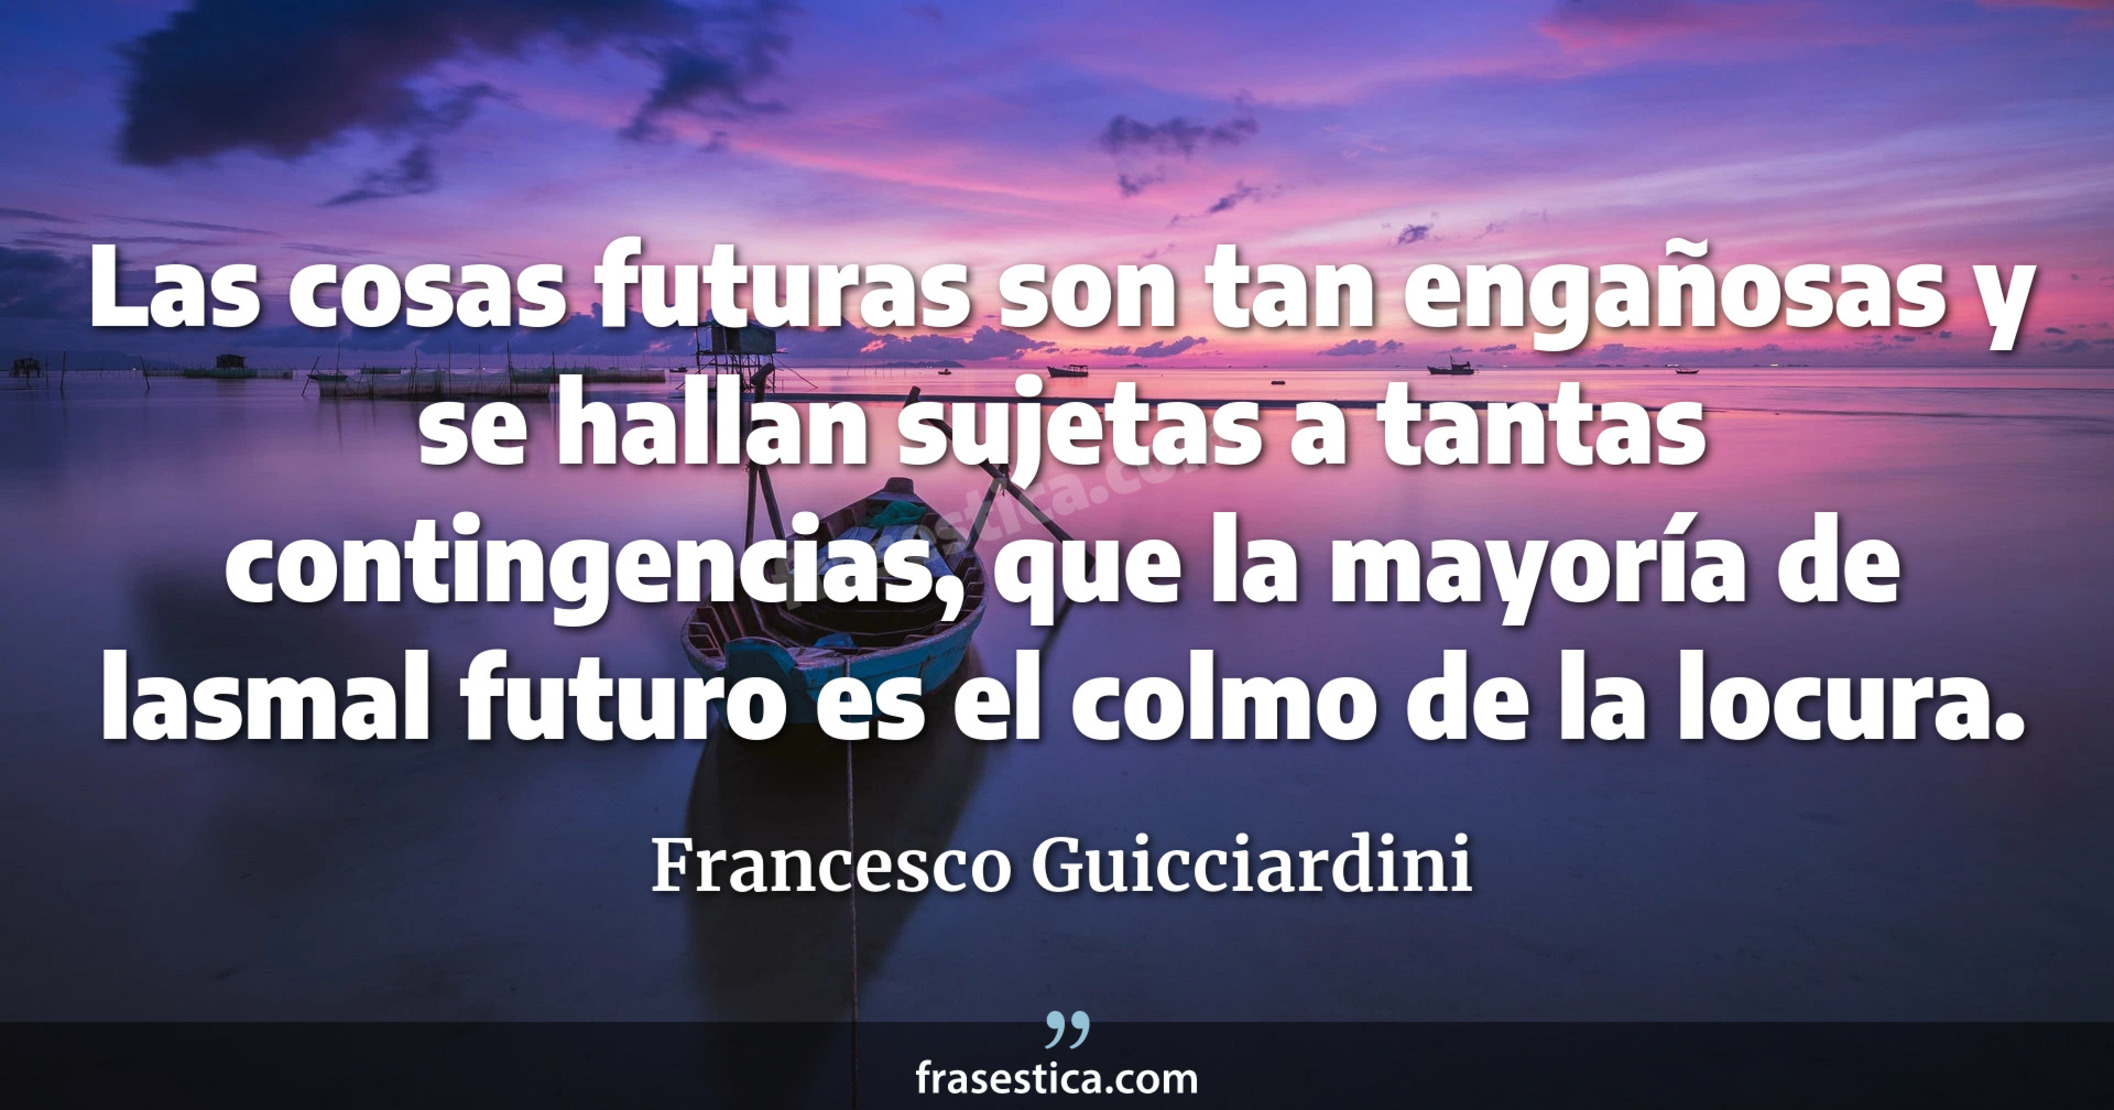 Las cosas futuras son tan engañosas y se hallan sujetas a tantas contingencias, que la mayoría de lasmal futuro es el colmo de la locura. - Francesco Guicciardini